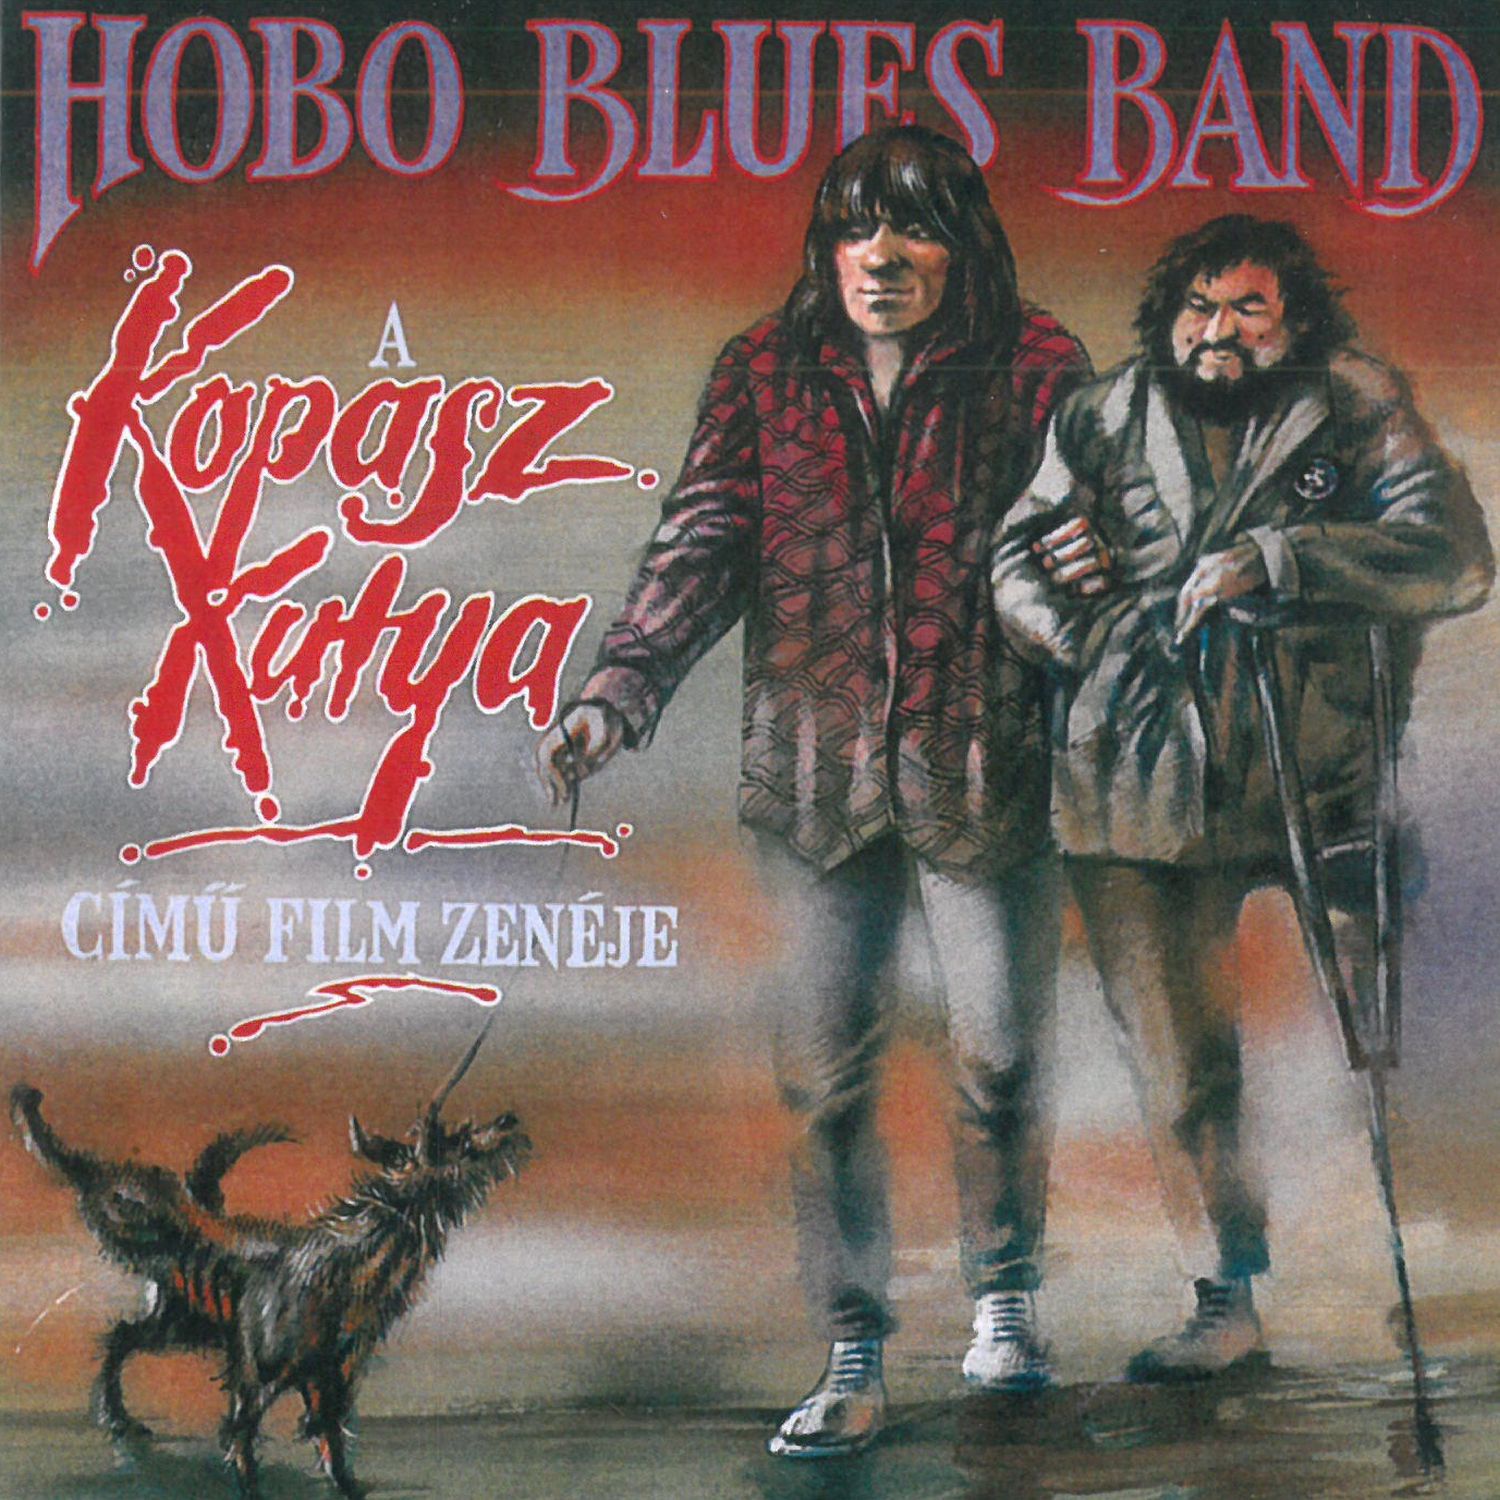 CD Shop - HOBO BLUES BAND KOPASZKUTYA